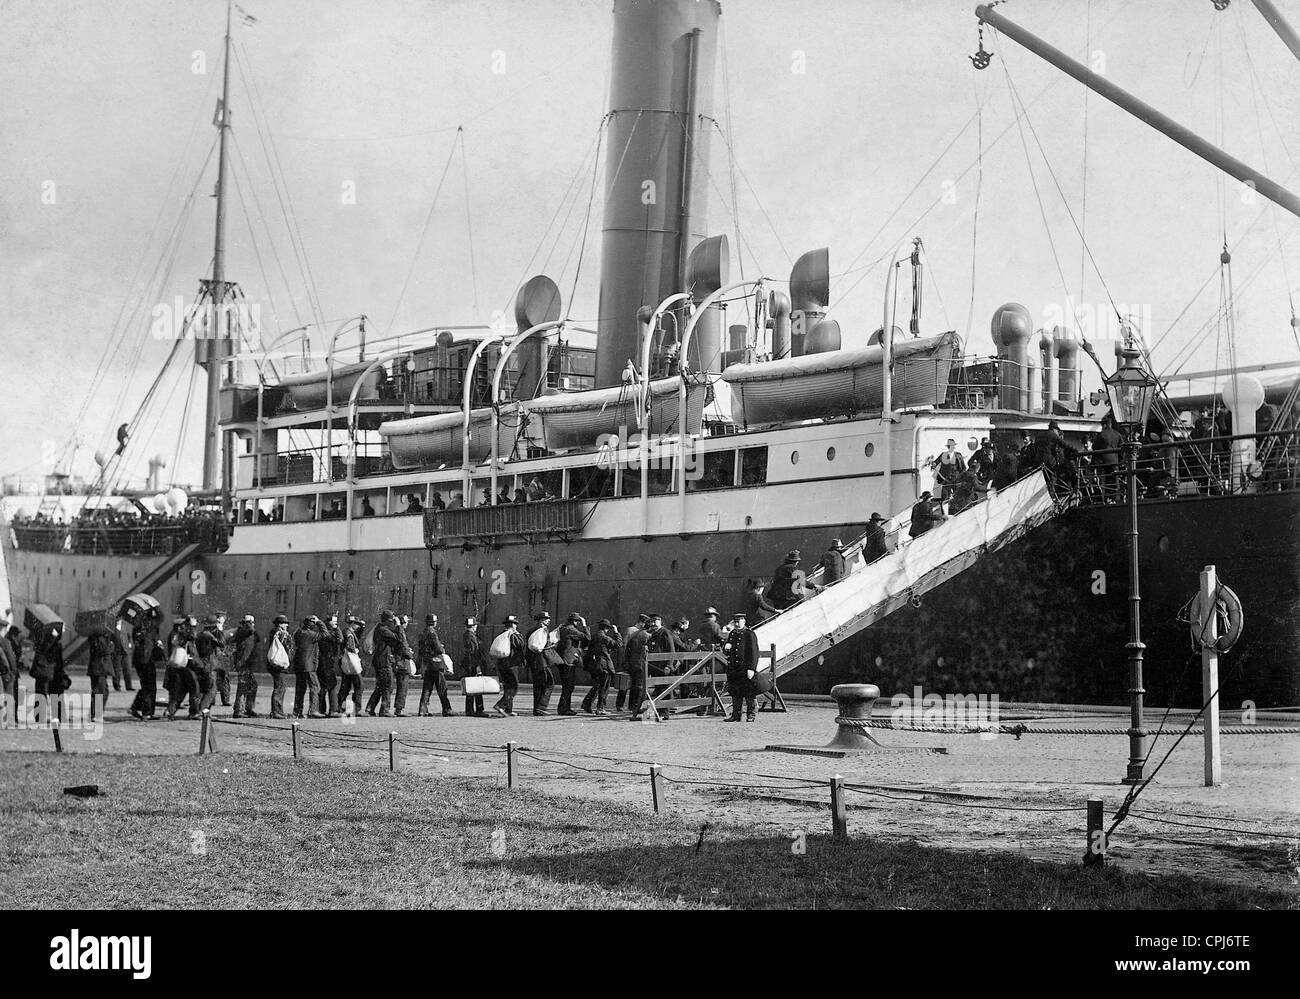 Les émigrants de l'embarquement, 1902 Banque D'Images